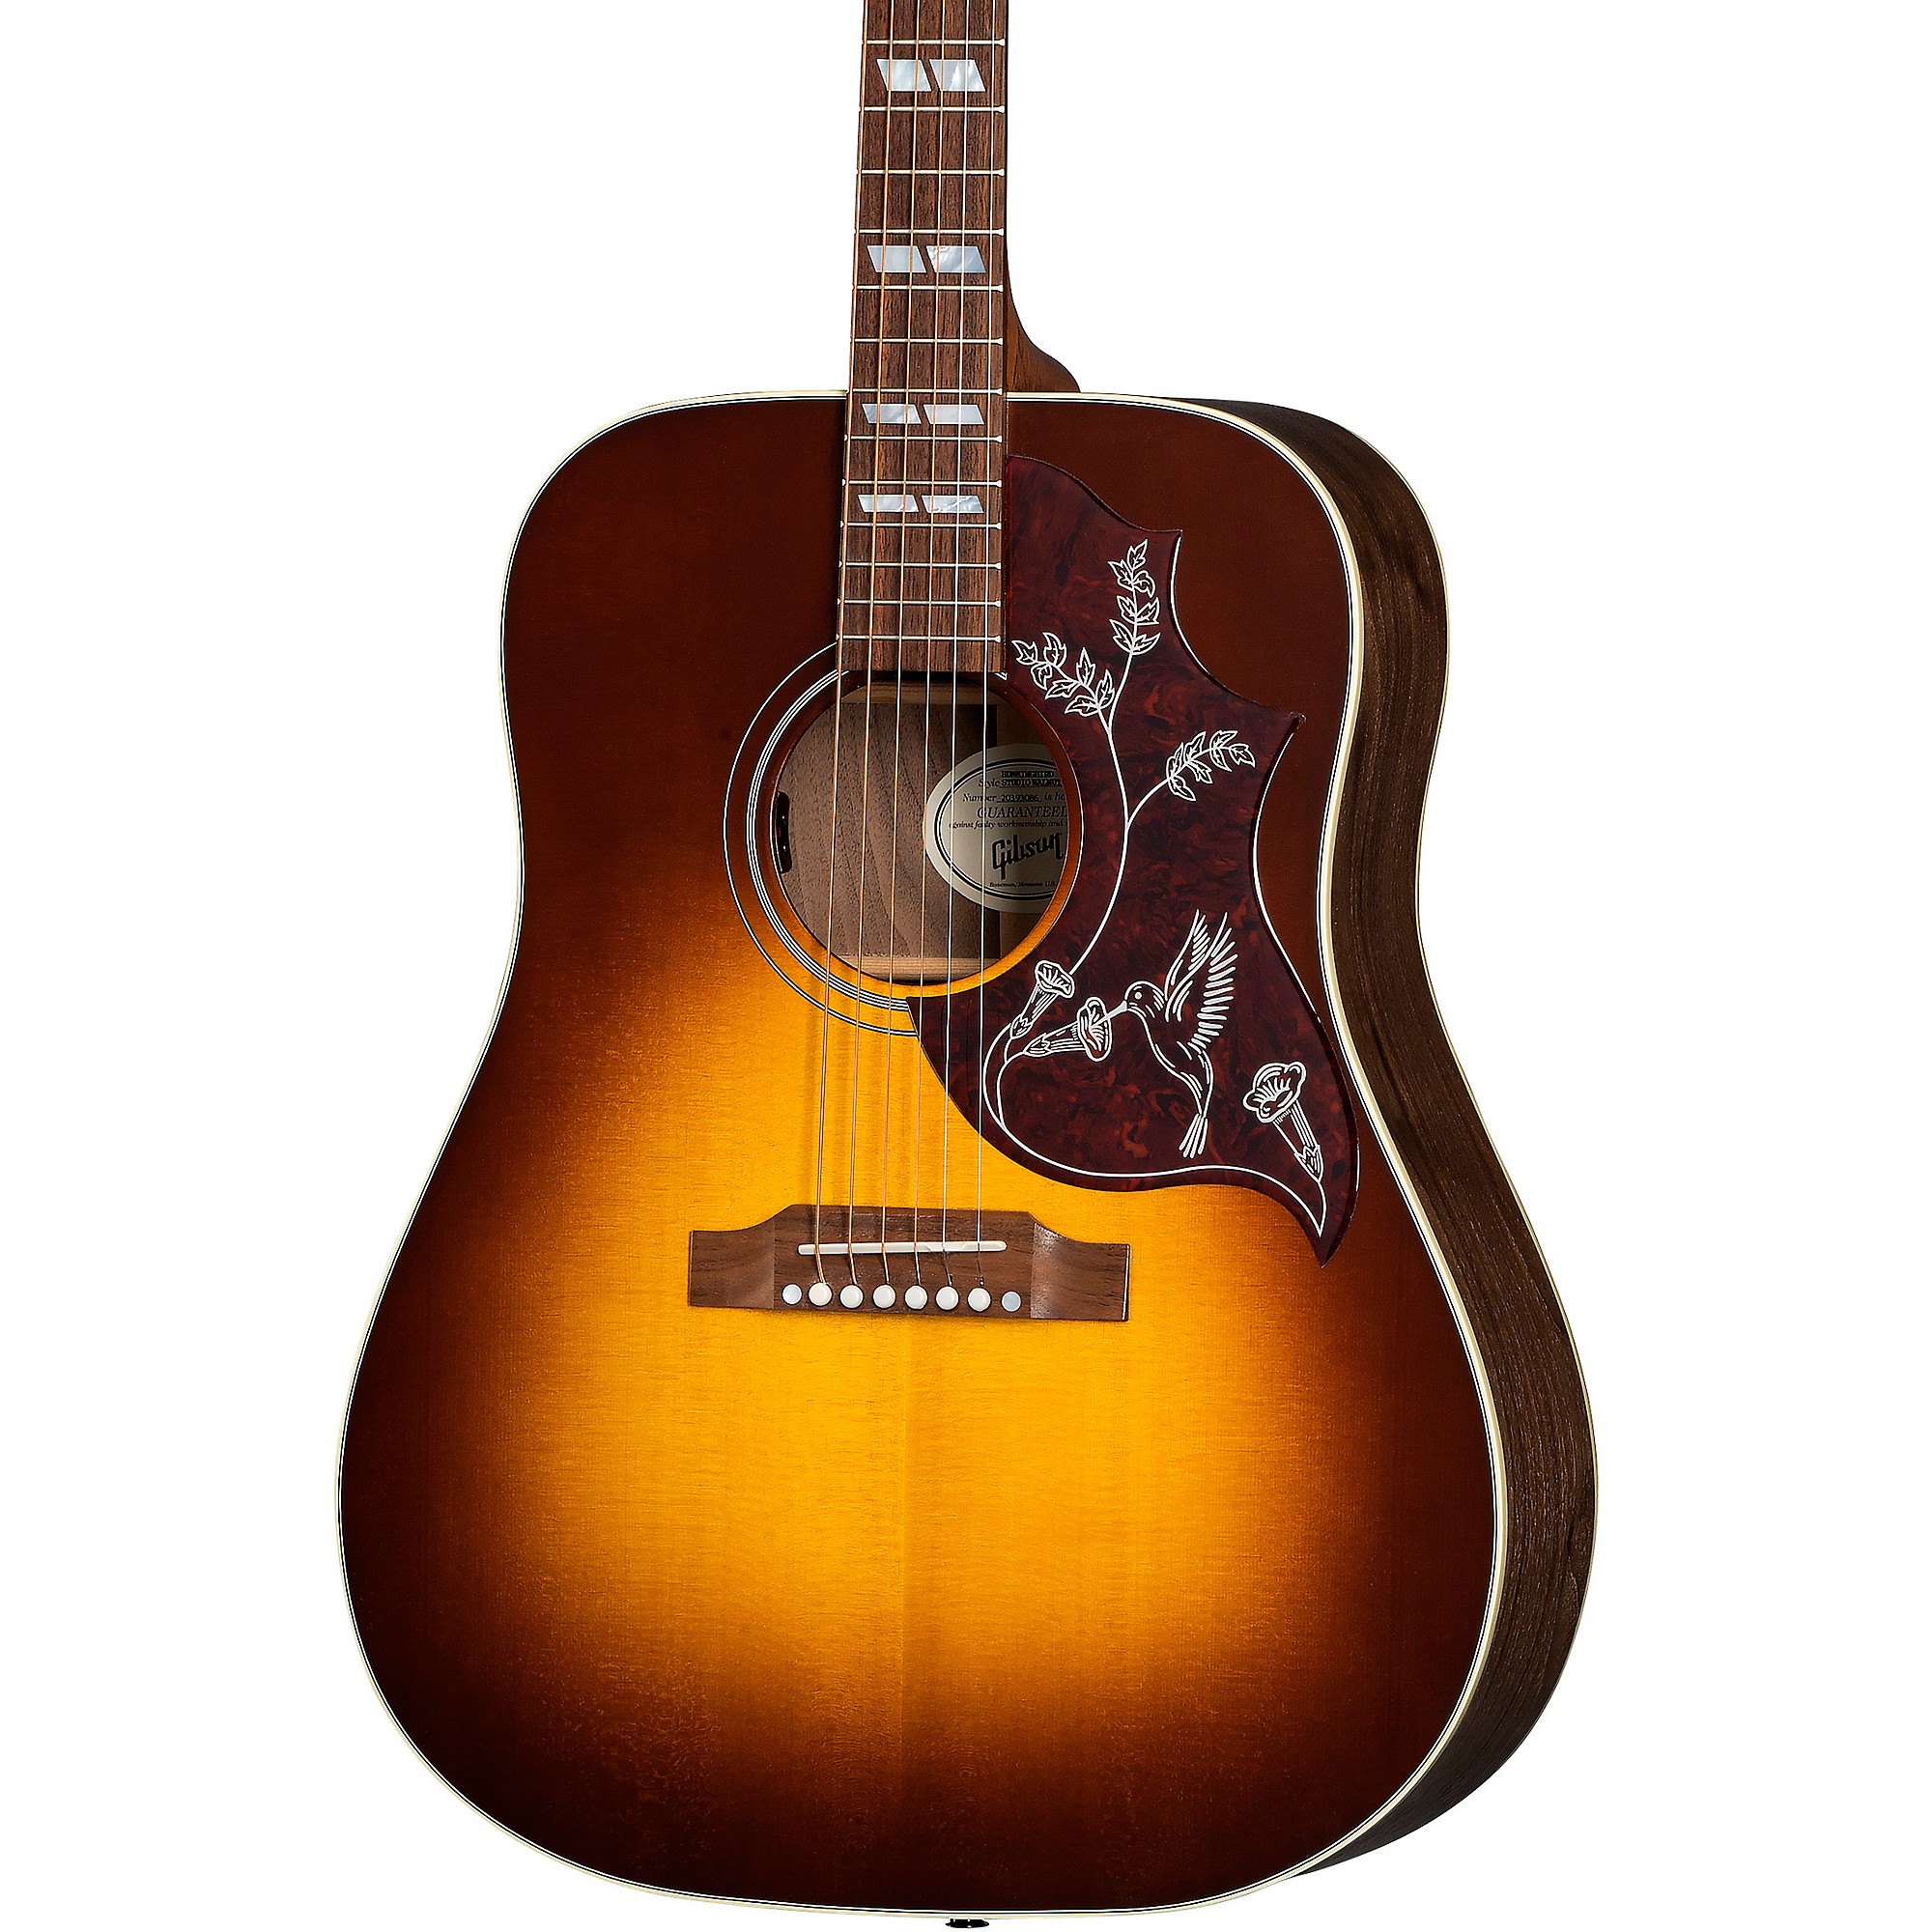 Акустически-электрическая гитара Gibson Hummingbird Studio Walnut Walnut Burst gibson sj 200 studio walnut walnut burst 100